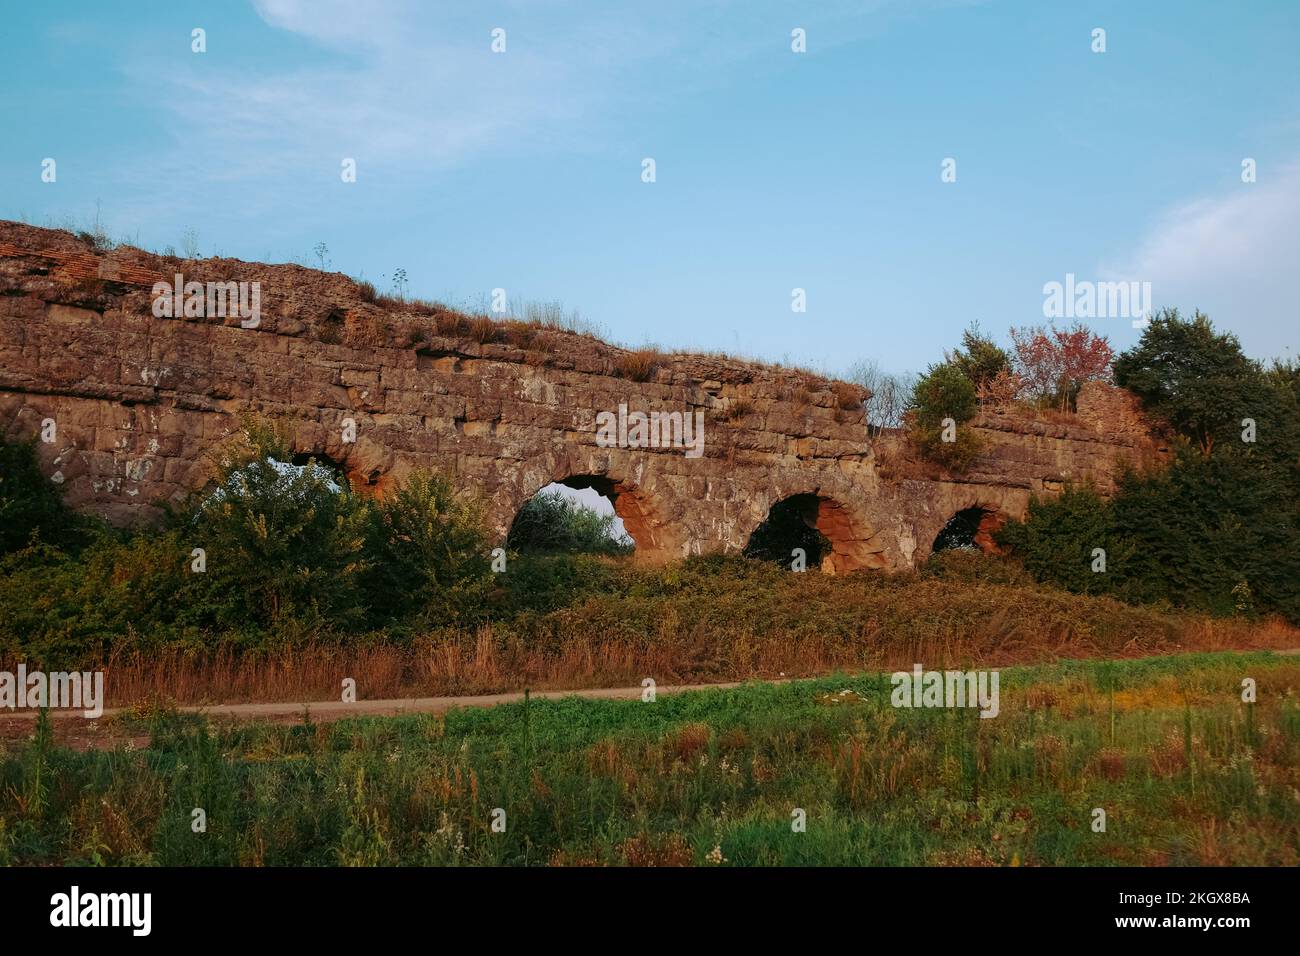 Antichi acquedotti al Parco degli Acquedotti. Archi in pietra costruiti per portare l'acqua nella città durante l'Impero Romano. Parco all'aperto a Roma. Foto Stock